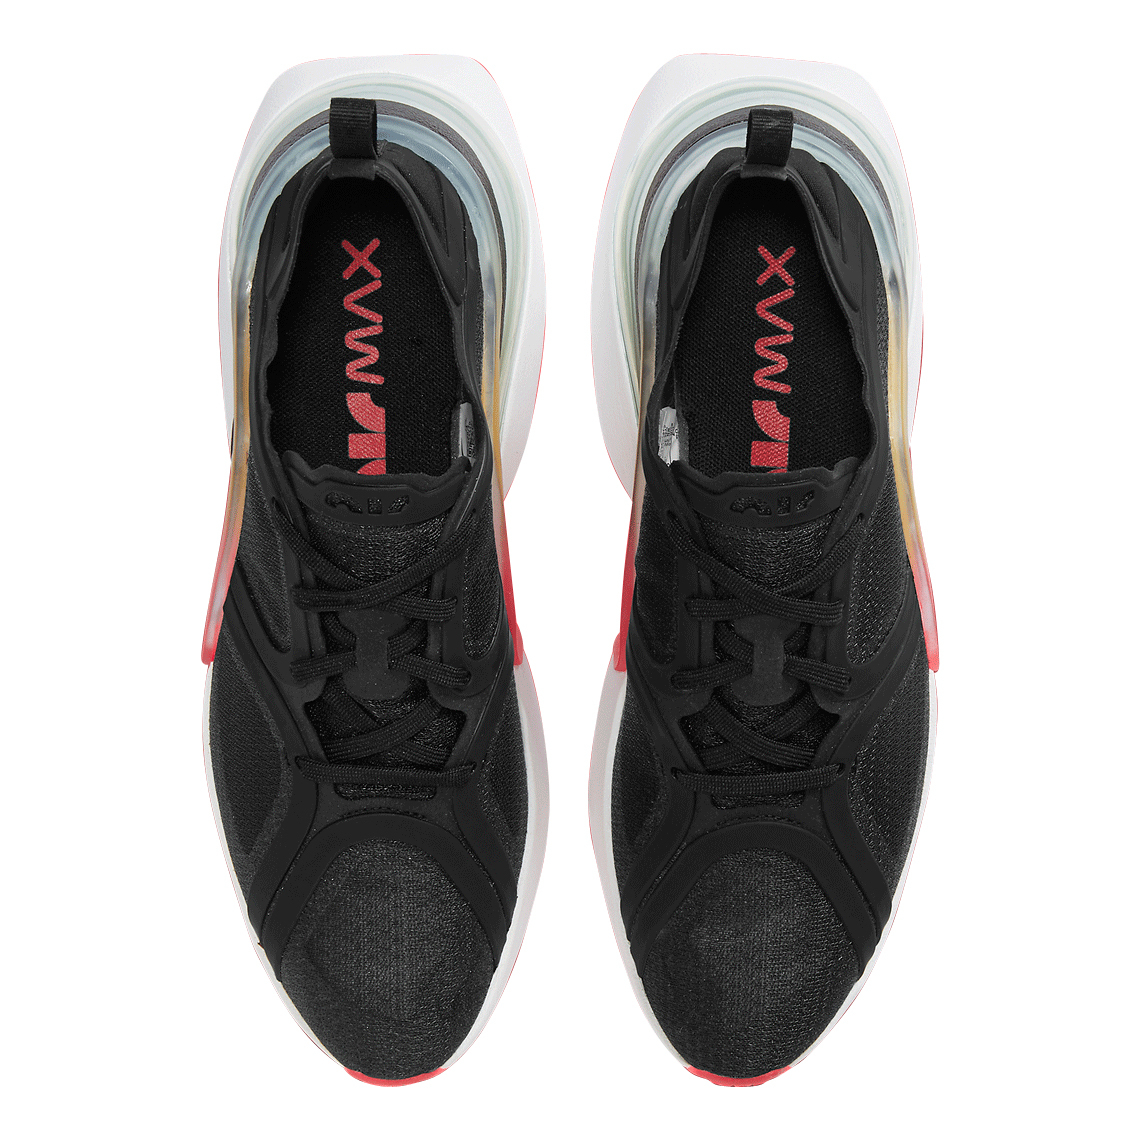 Nike WMNS Air Max 270 XX Black White Bright Crimson - Jun 2020 - CU9430-001